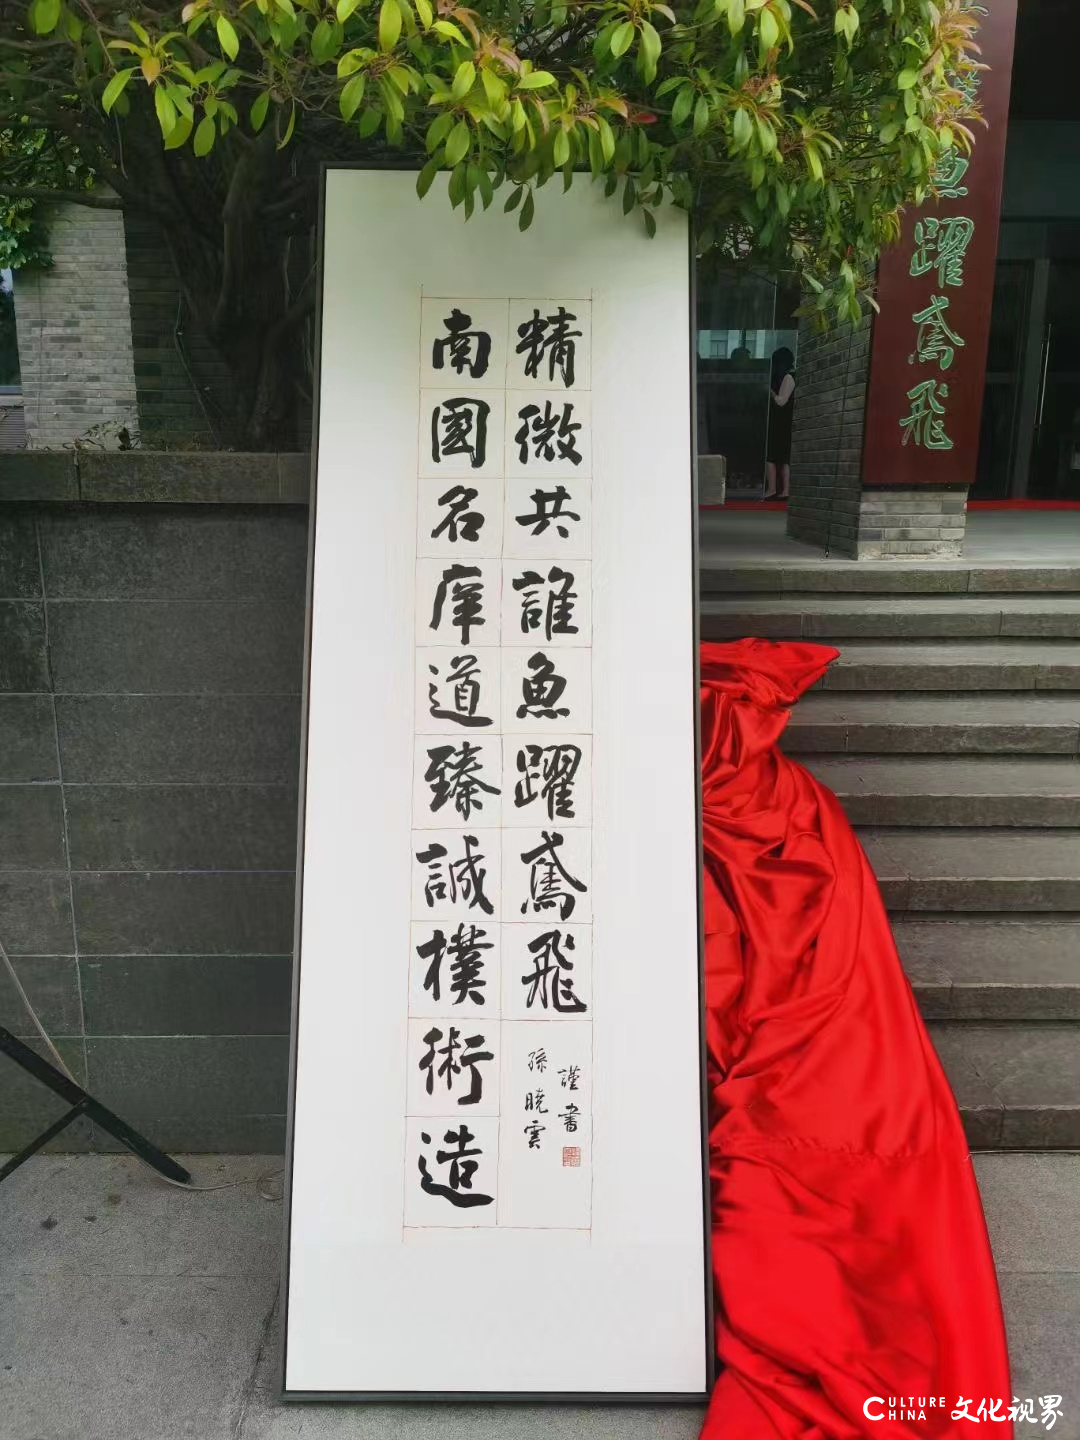 著名书法家孙晓云为南京大学书写36字巨幅楹联